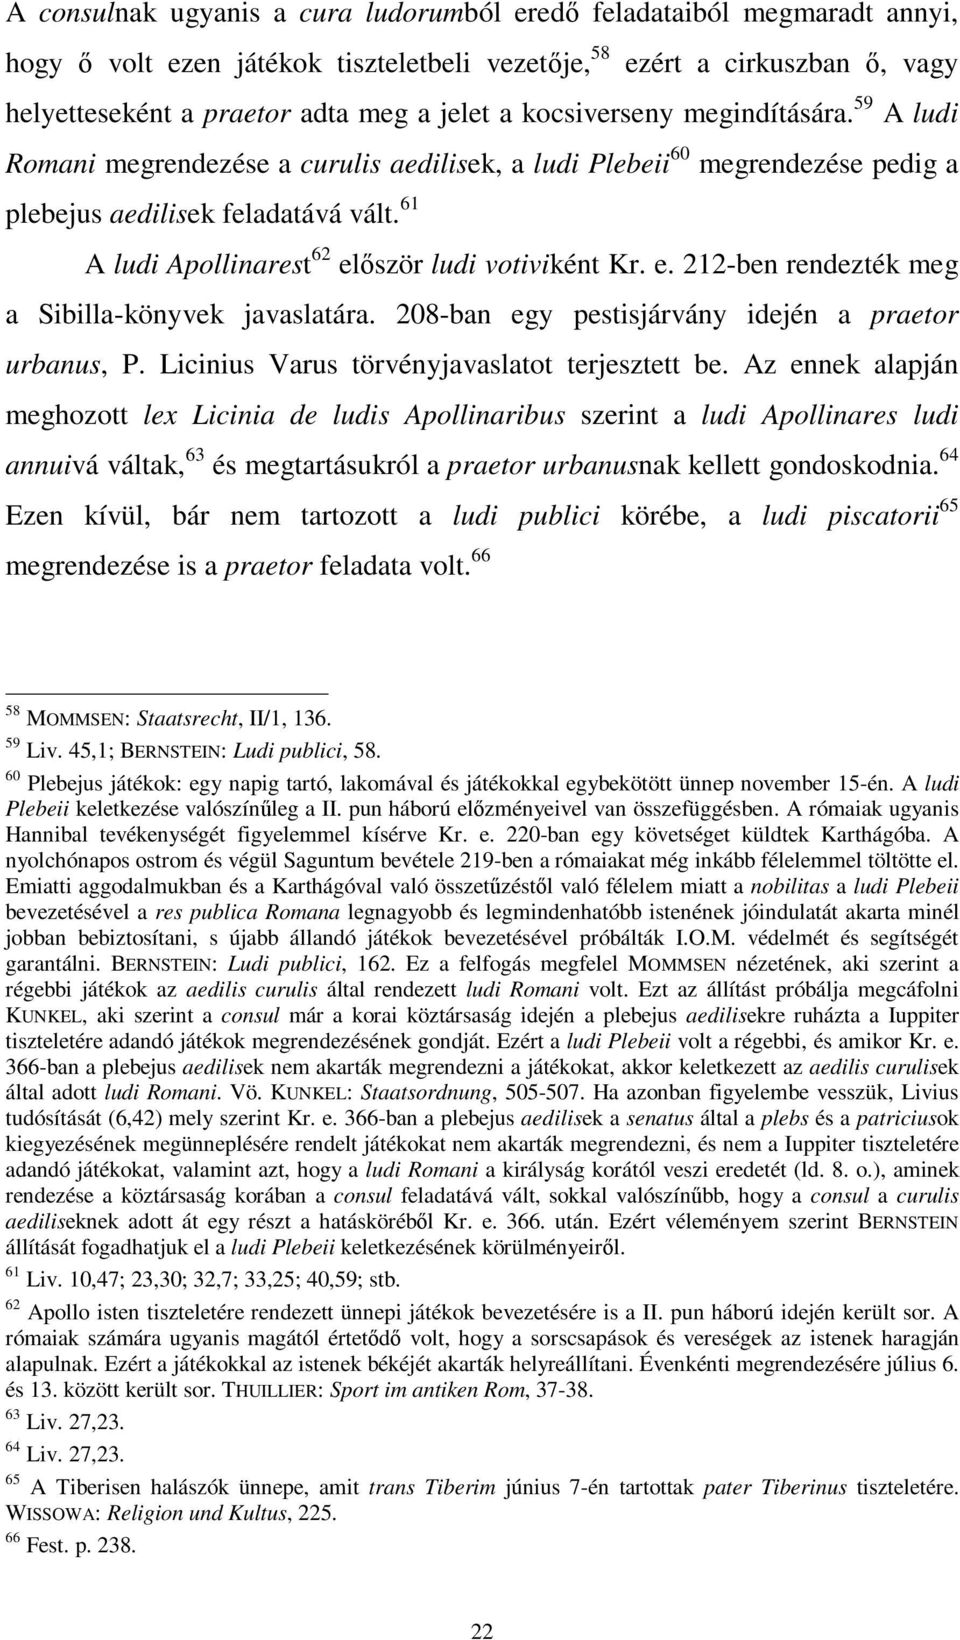 61 A ludi Apollinarest 62 először ludi votiviként Kr. e. 212-ben rendezték meg a Sibilla-könyvek javaslatára. 208-ban egy pestisjárvány idején a praetor urbanus, P.